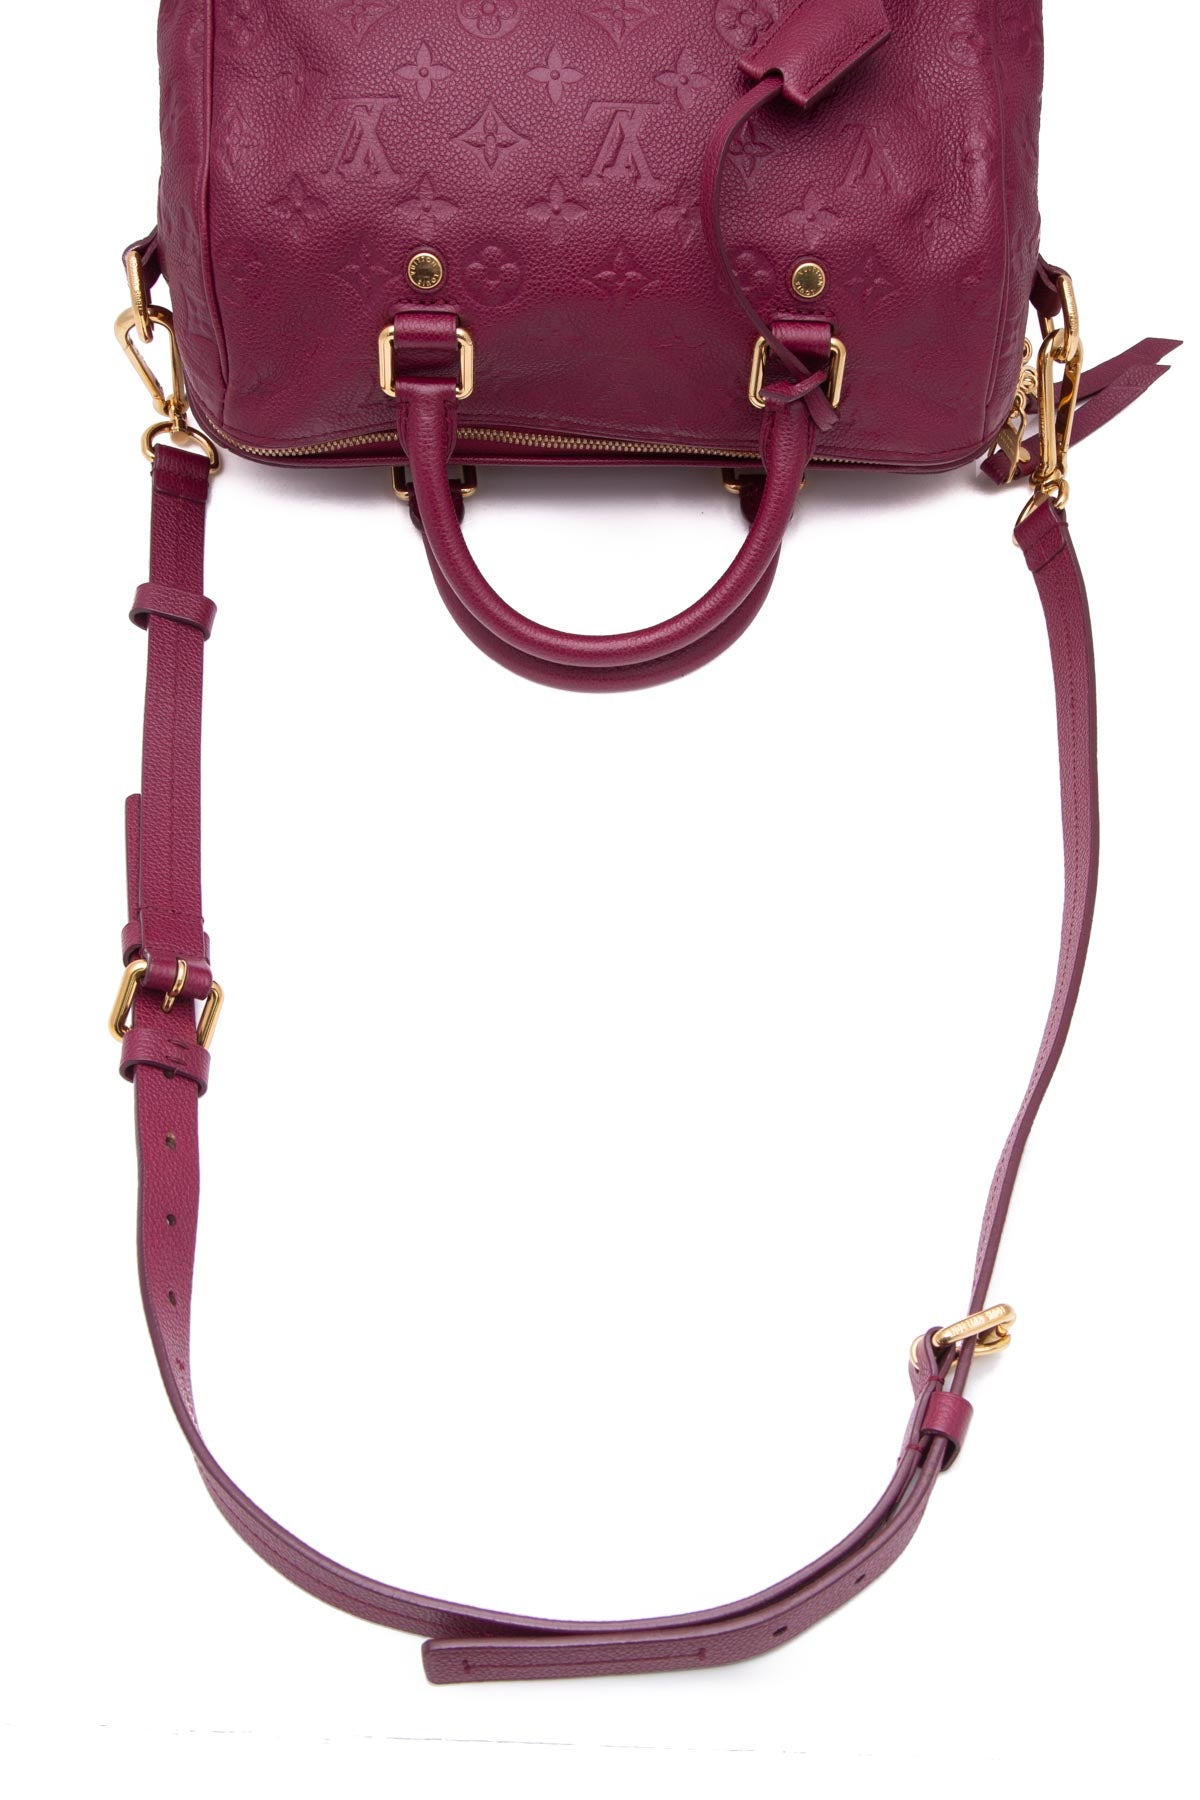 Louis Vuitton Speedy Bandouliere Bag Monogram Empreinte Leather 25 Pink